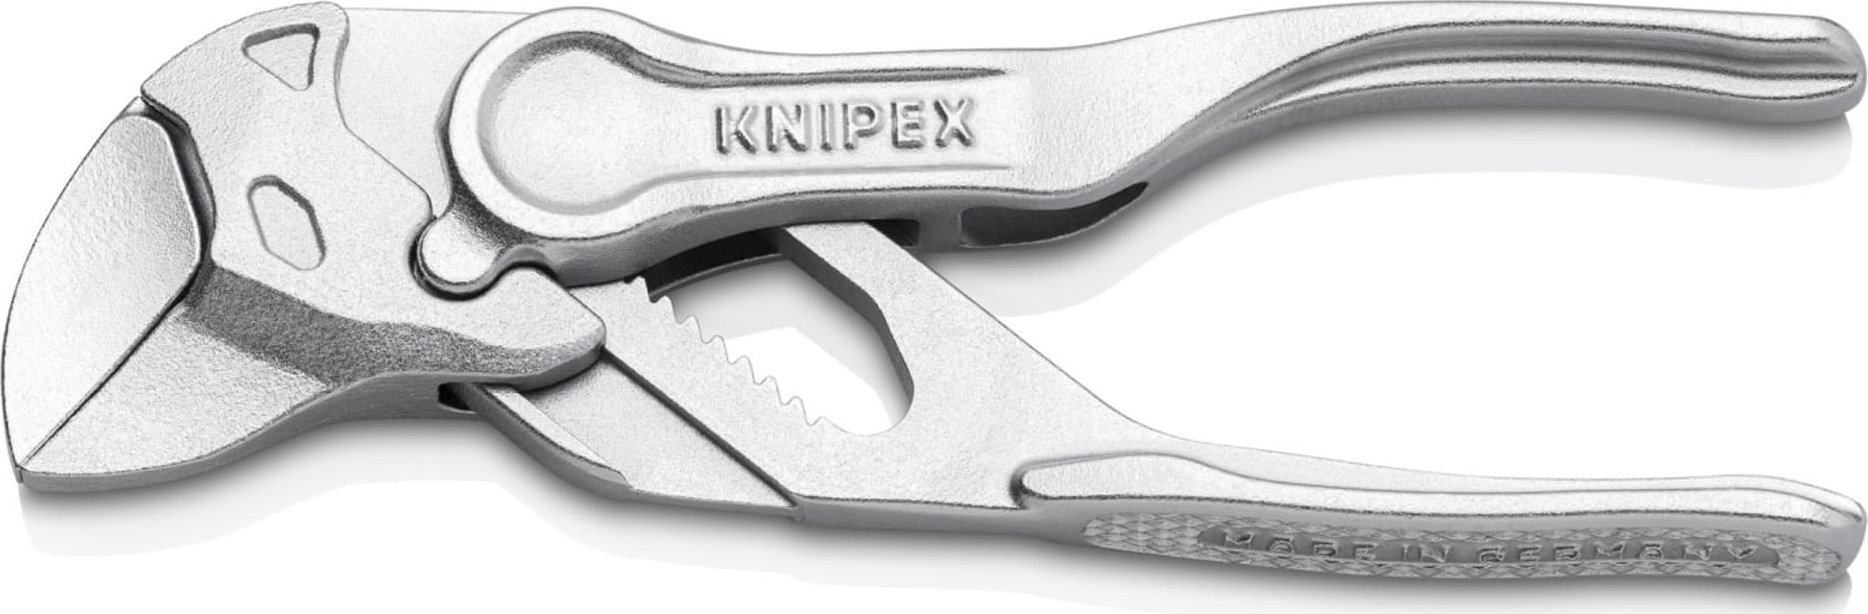 Knipex Szczypce-klucz XS szczypce i klucz w jednym narzedziu wytlaczana, chropowata powierzchnia chromowane 100 mm 86 04 100 BK 86 04 100 BK